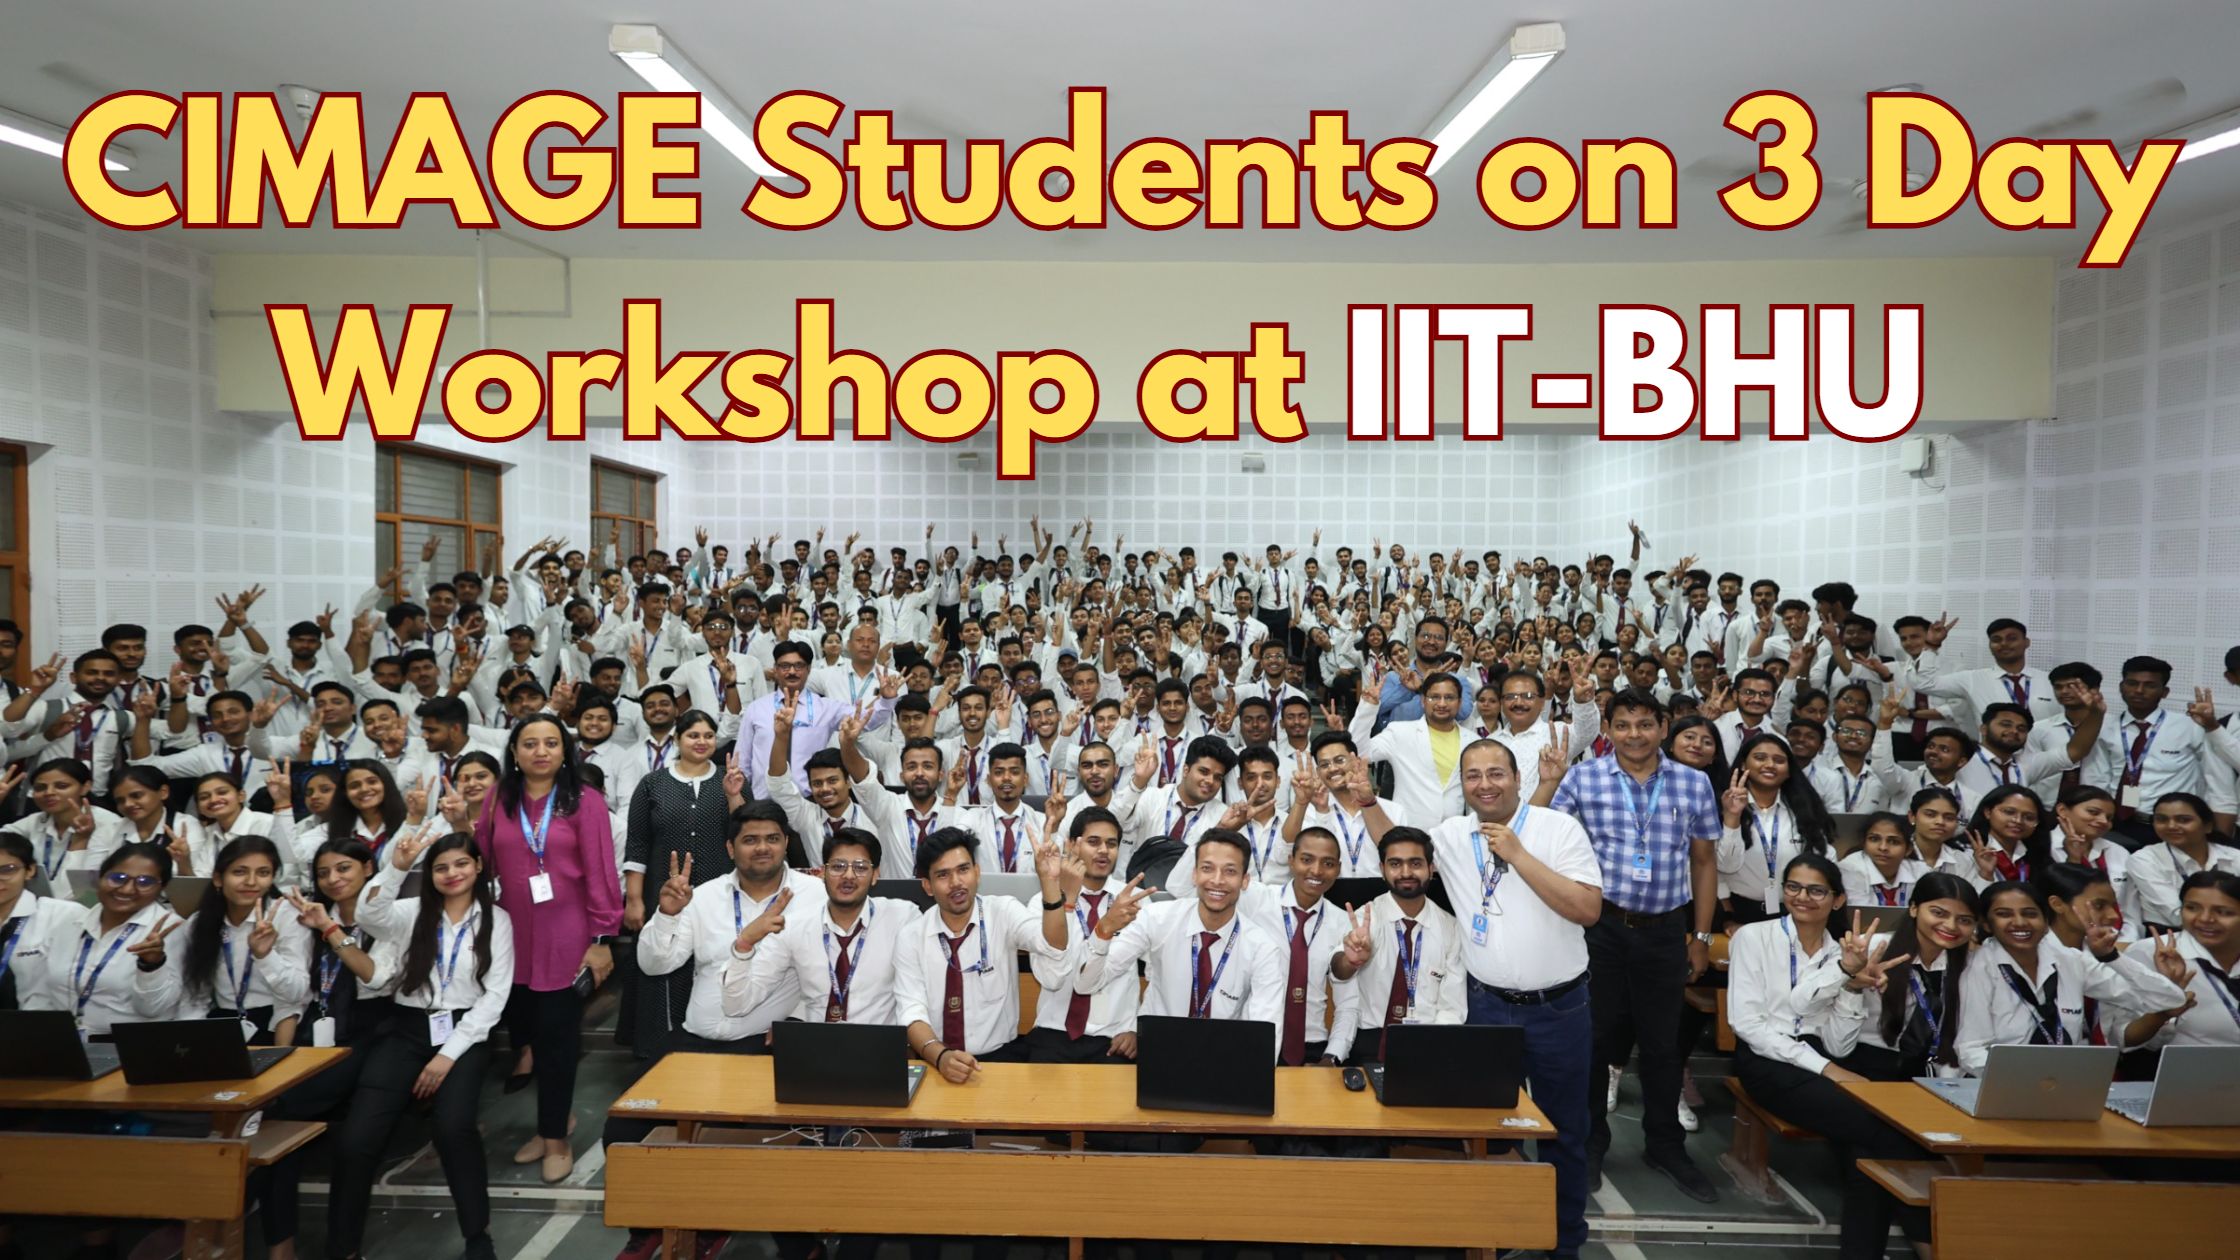 सिमेज के 300 छात्रों ने IIT-BHU में किया तीन दिवसीय वर्कशॉप | छात्रों ने CHAT-GPT, IOT, Ethical Hacking, Game Development पर किया कोर्स